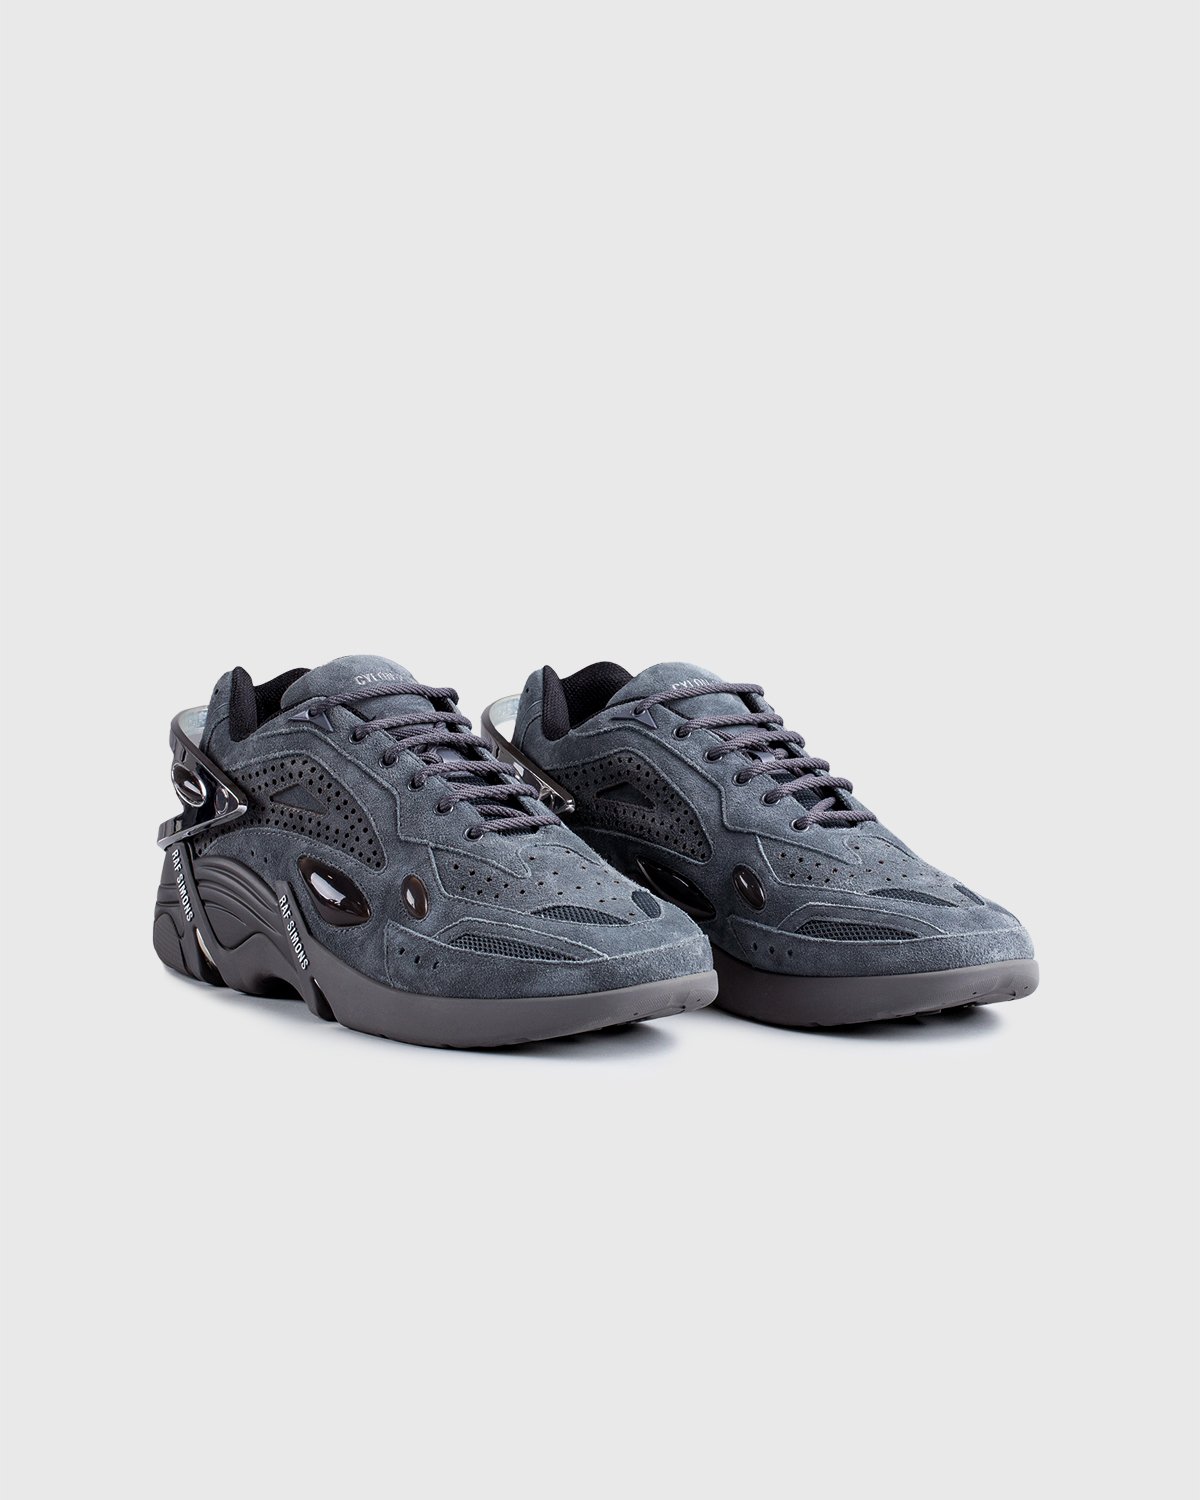 Raf Simons - Cylon Grey - Footwear - Grey - Image 3